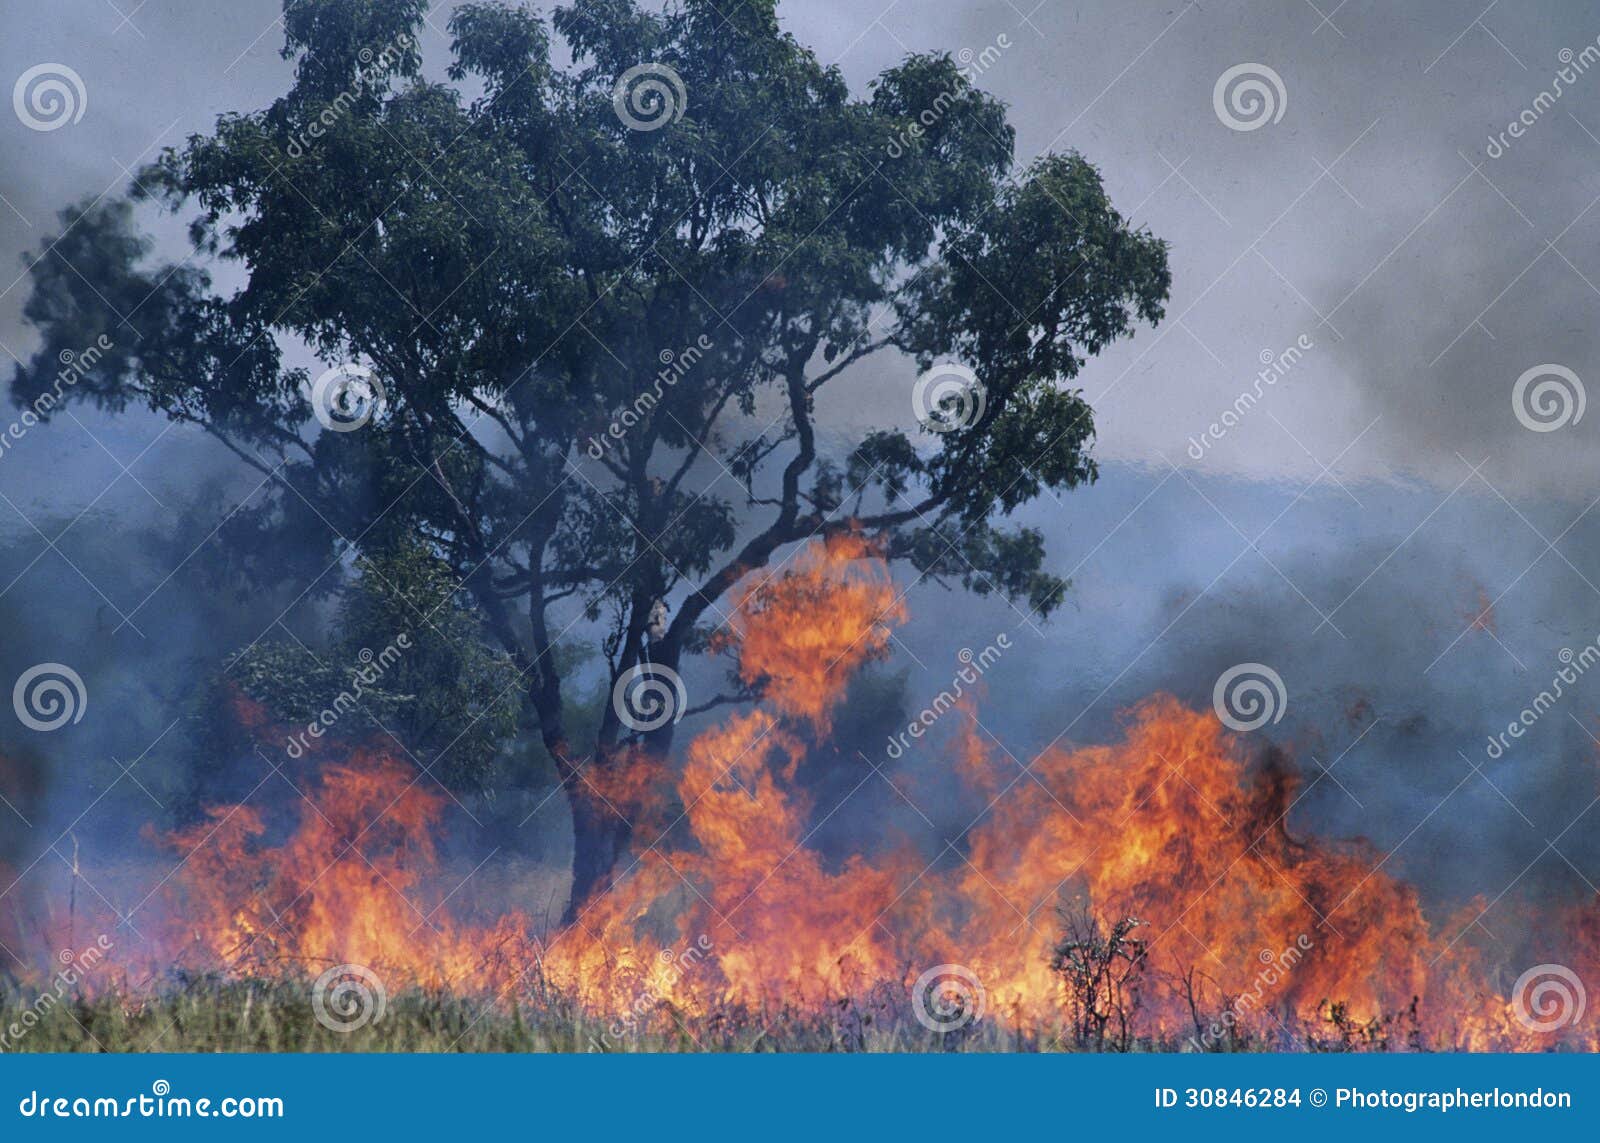 australia bush fire